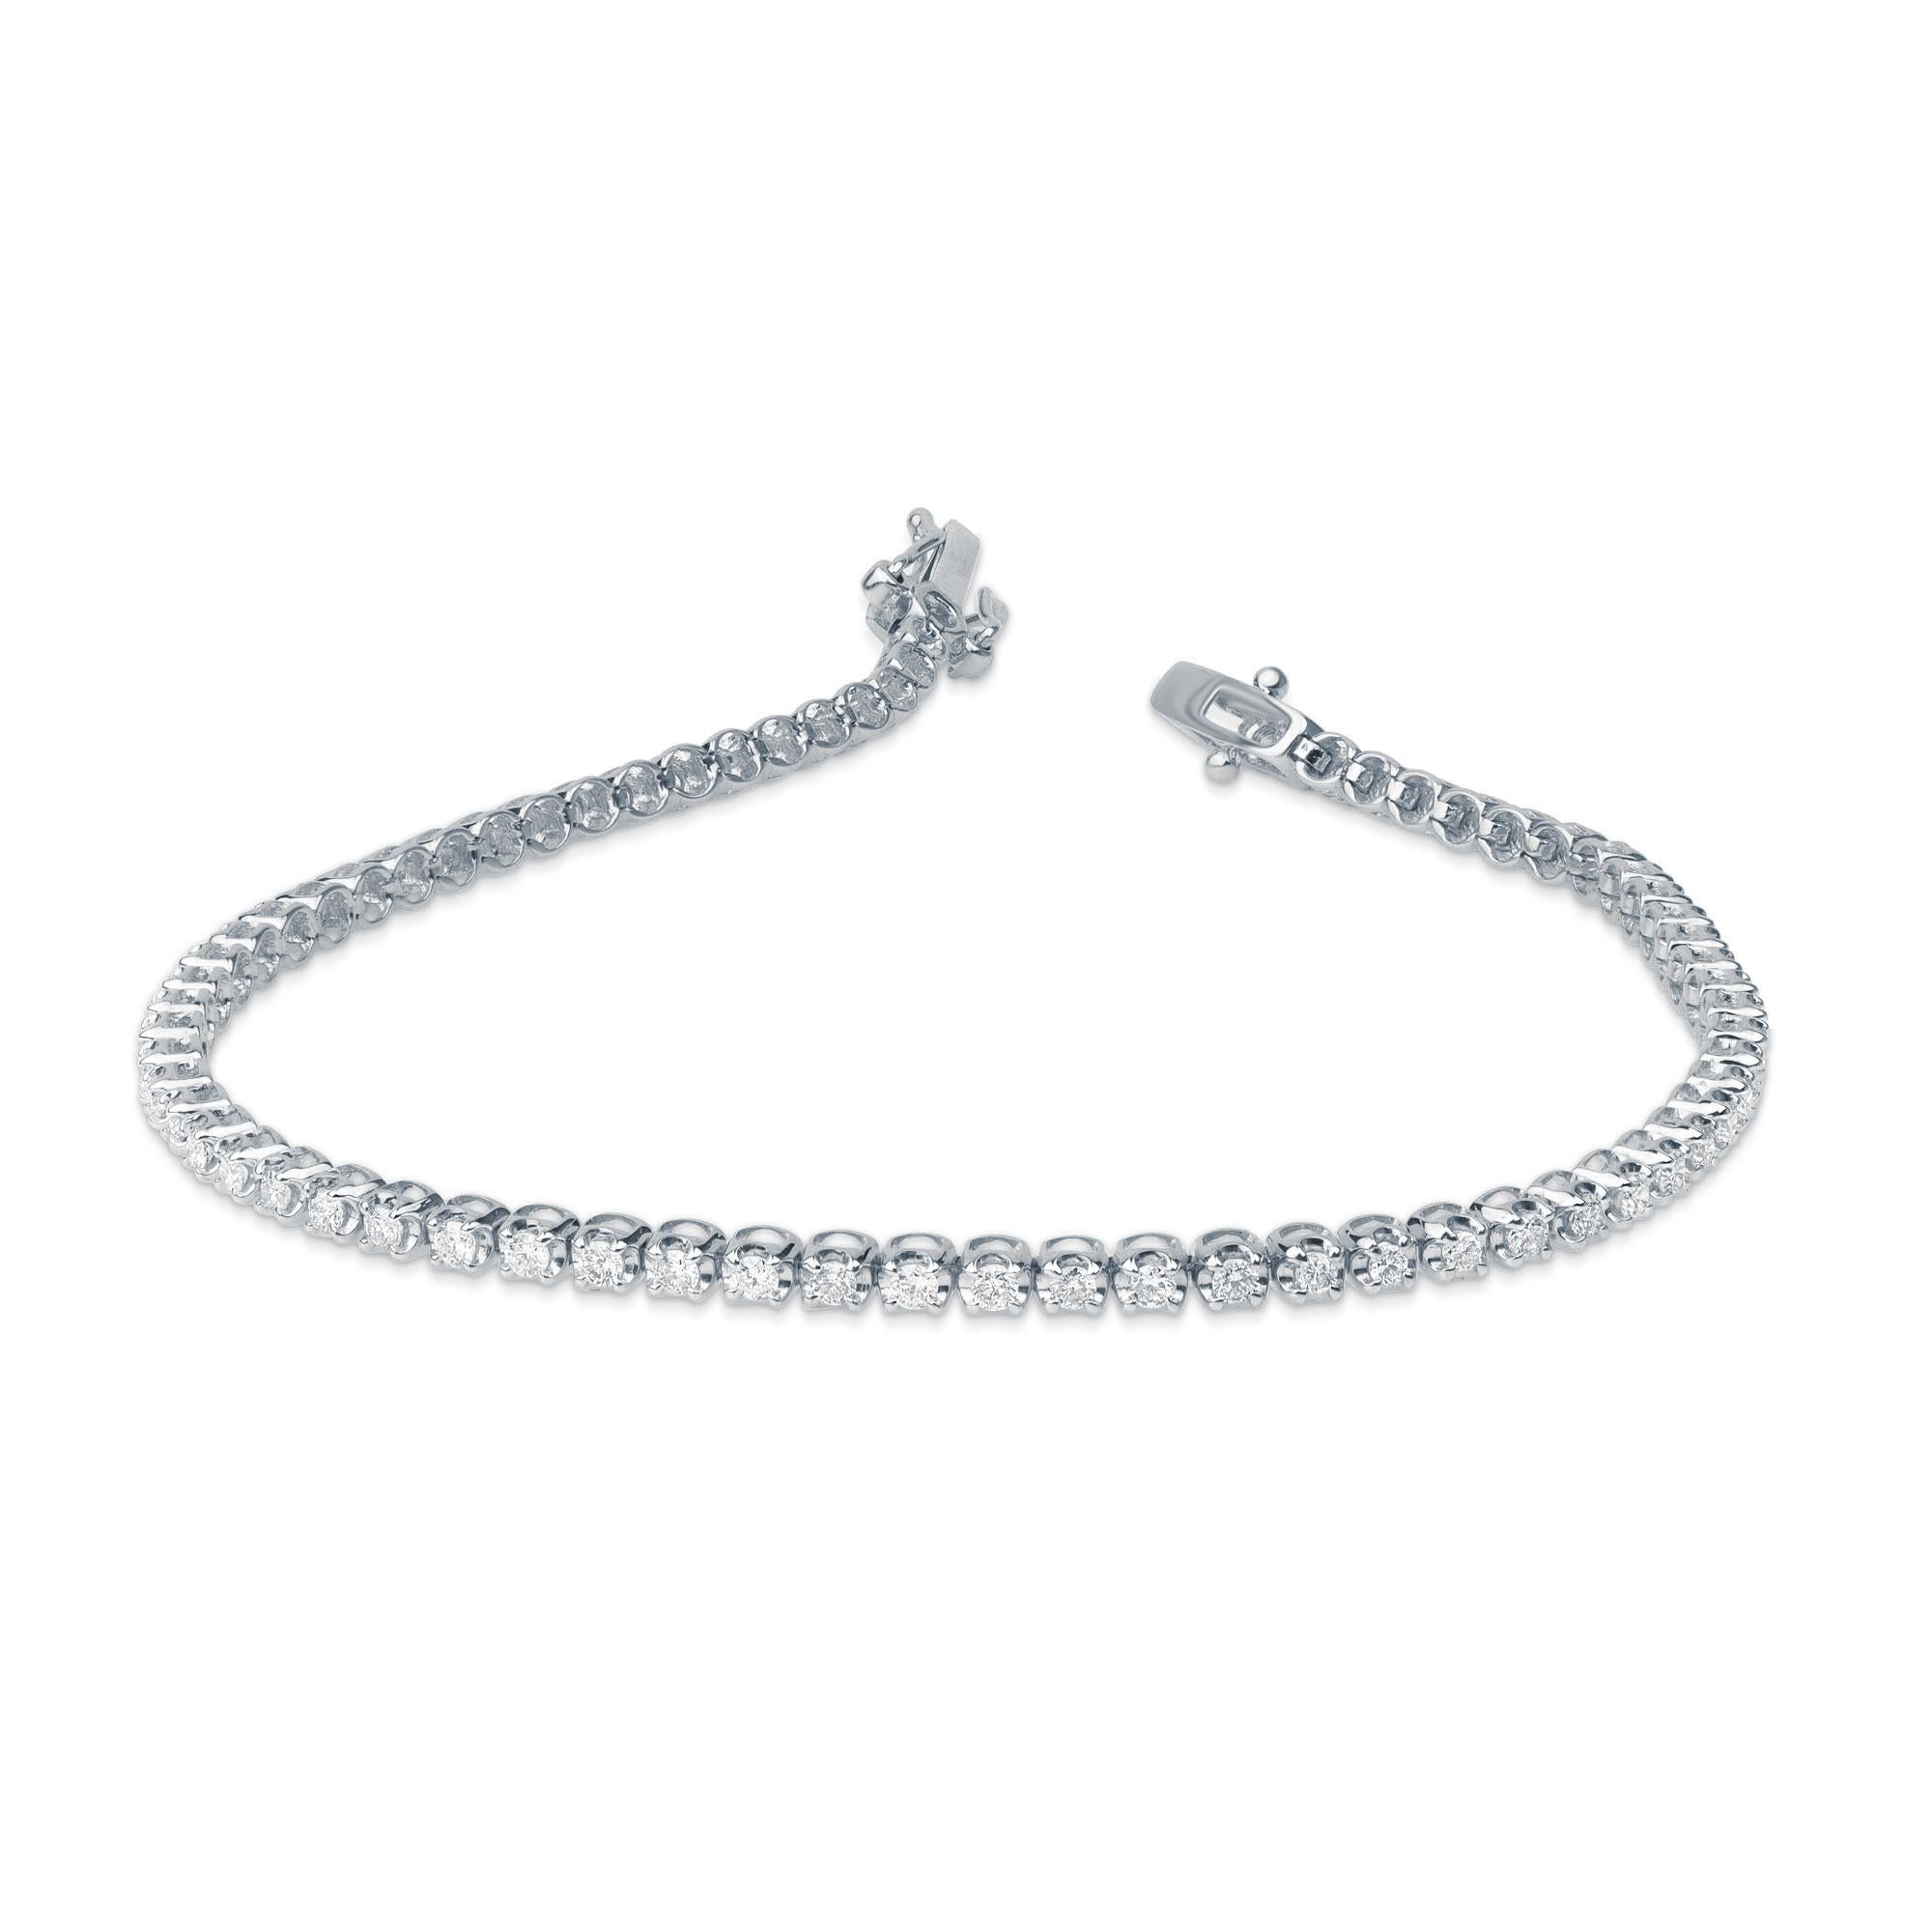 Un bracelet de tennis classique - un accessoire parfait pour les femmes avec des tenues de tous les jours. Élégamment conçu en or blanc 10 kt et agrémenté de 72 diamants naturels brillants en sertissage à griffes. Les diamants sont classés par